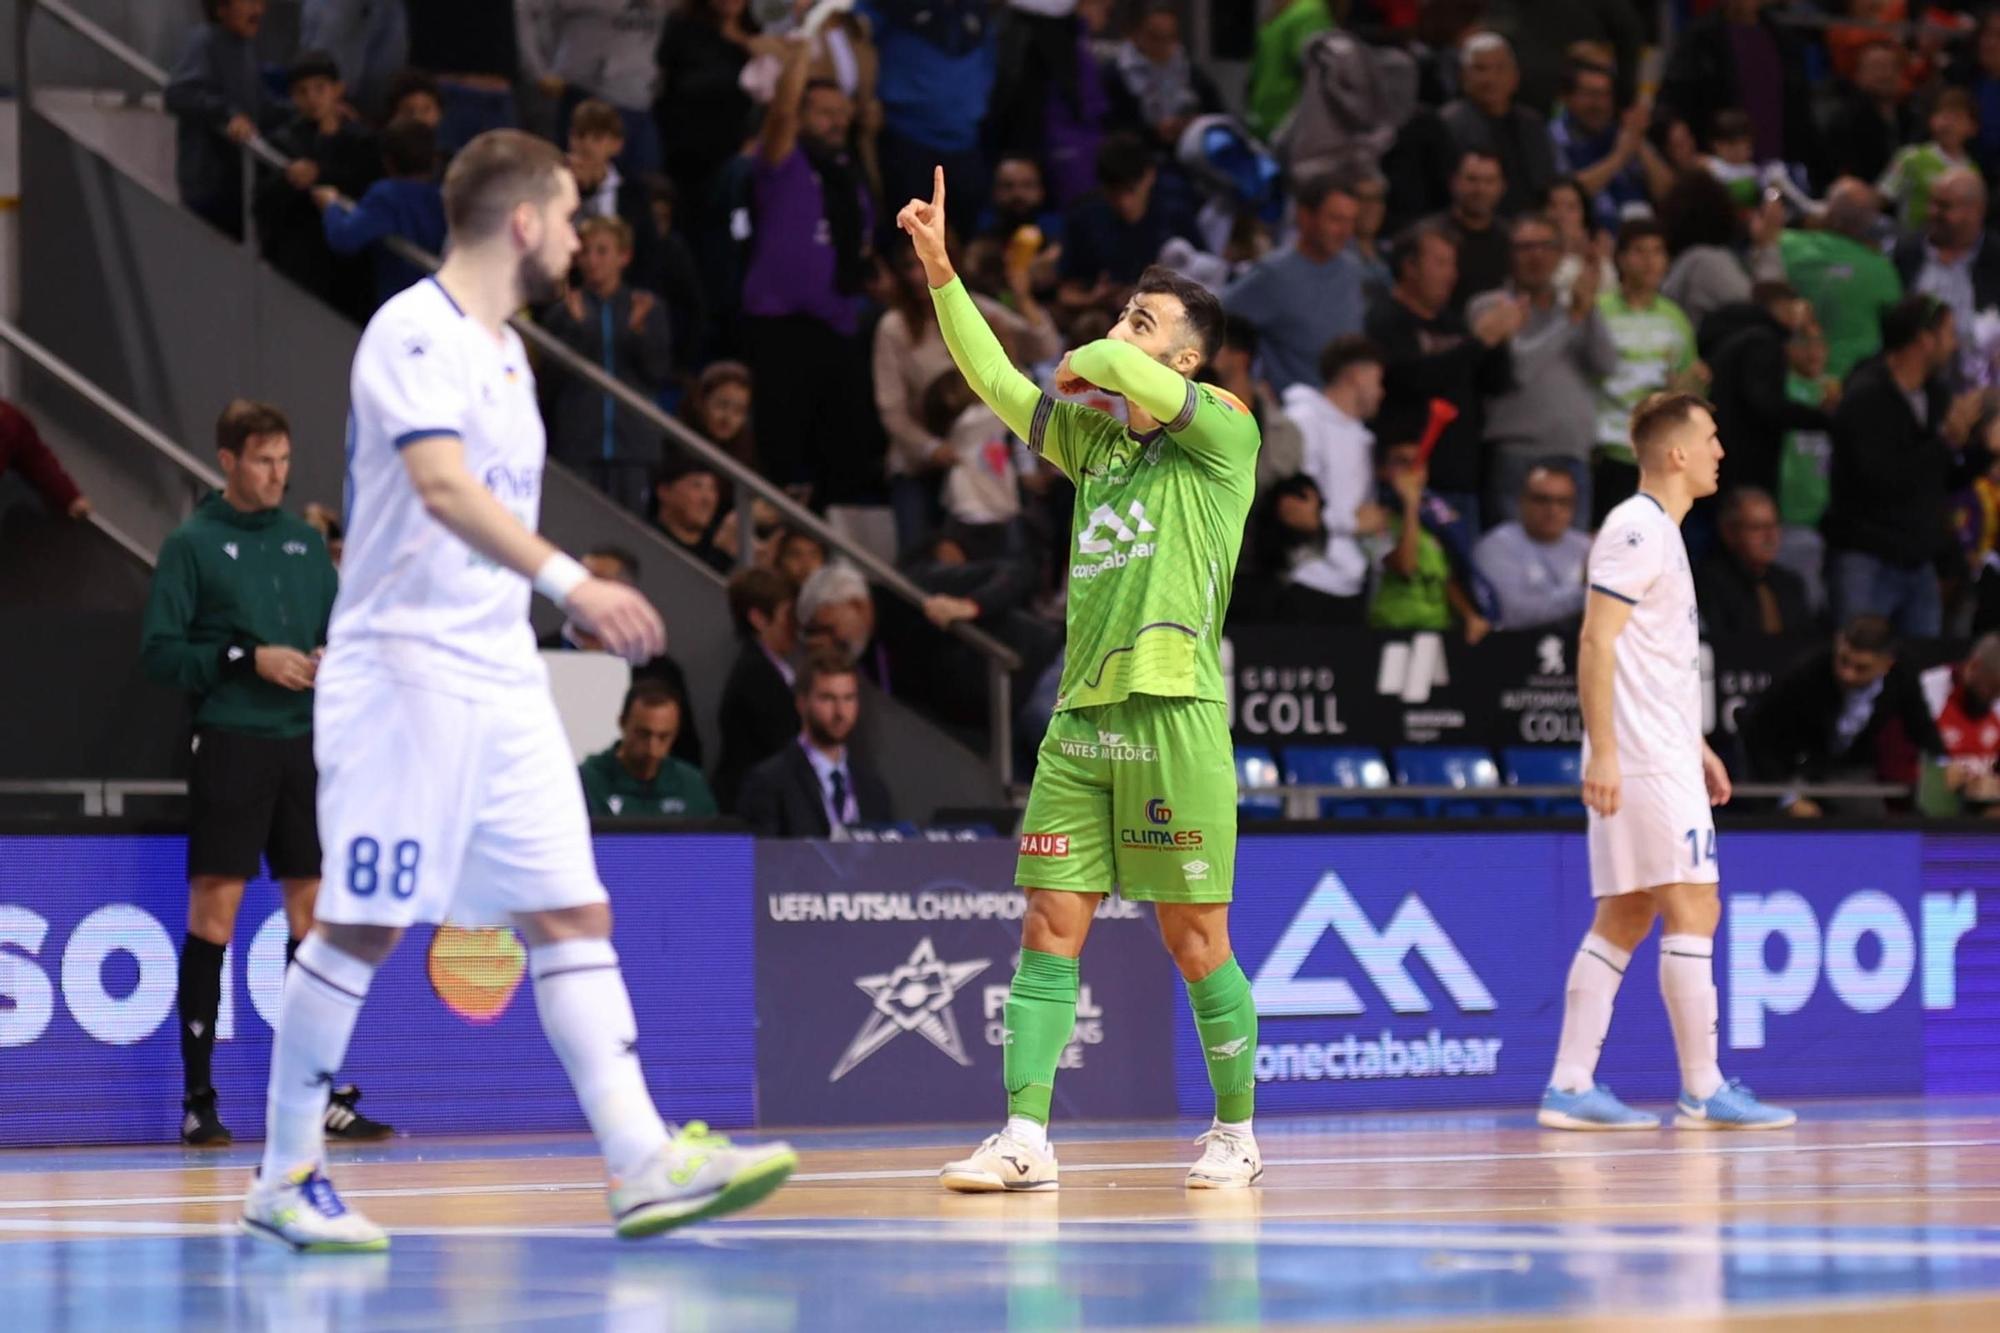 La clasificación del Palma Futsal para la Fase Final de la Champions League, en imágenes